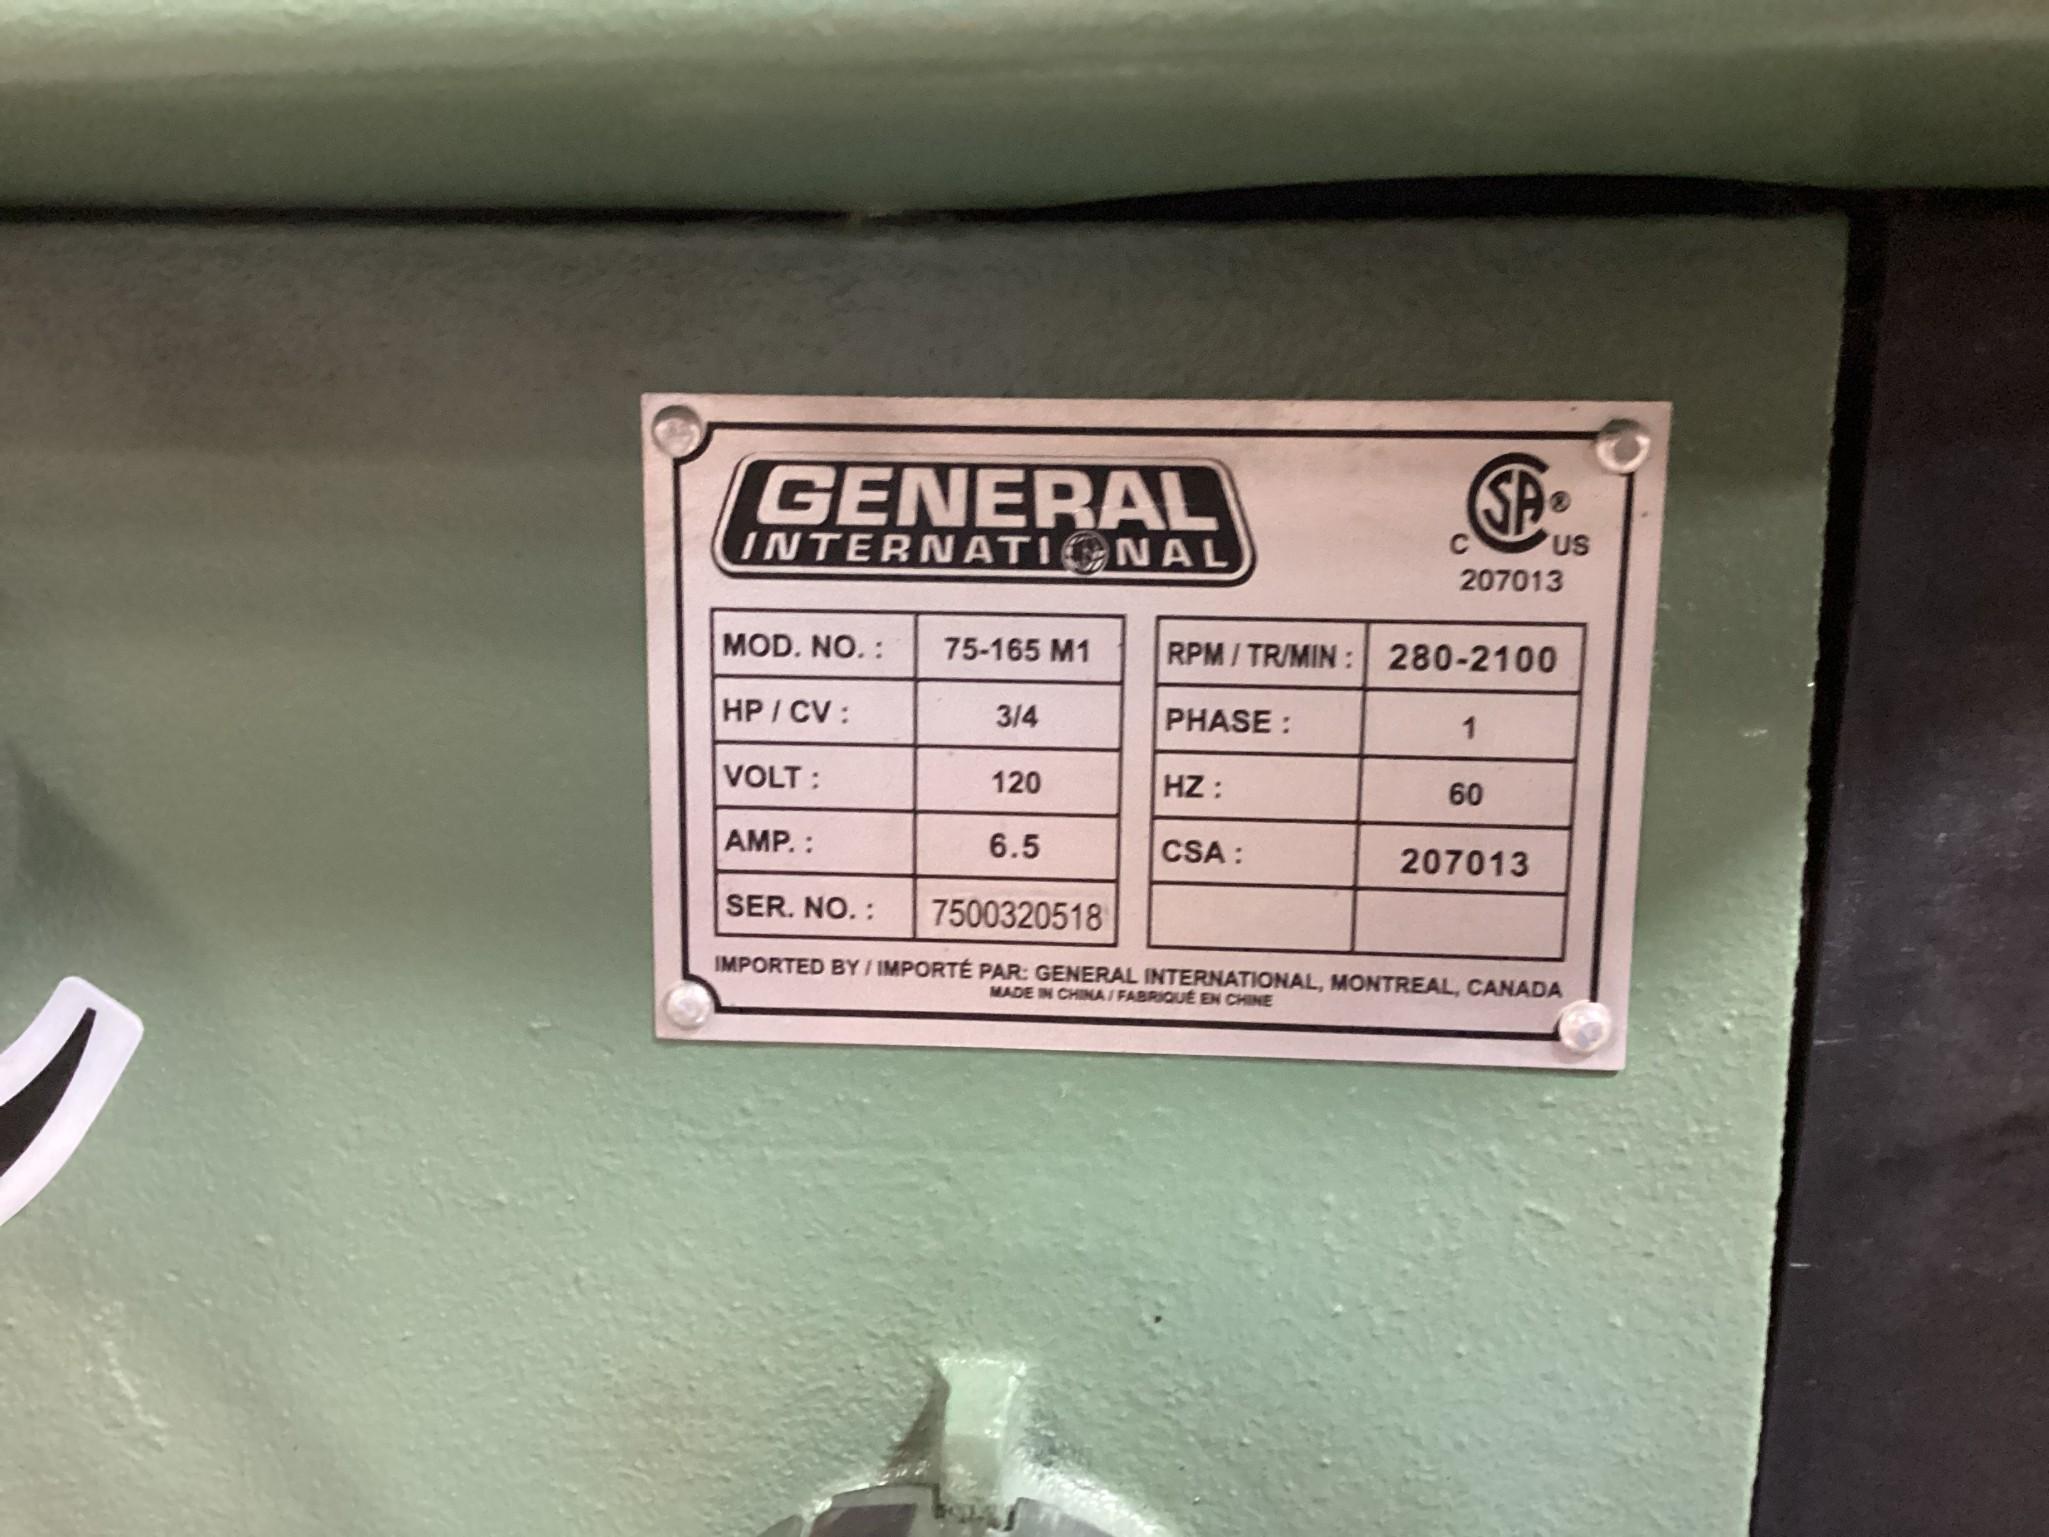 New Unused General Model: 75-165 M1 17" Drill Press